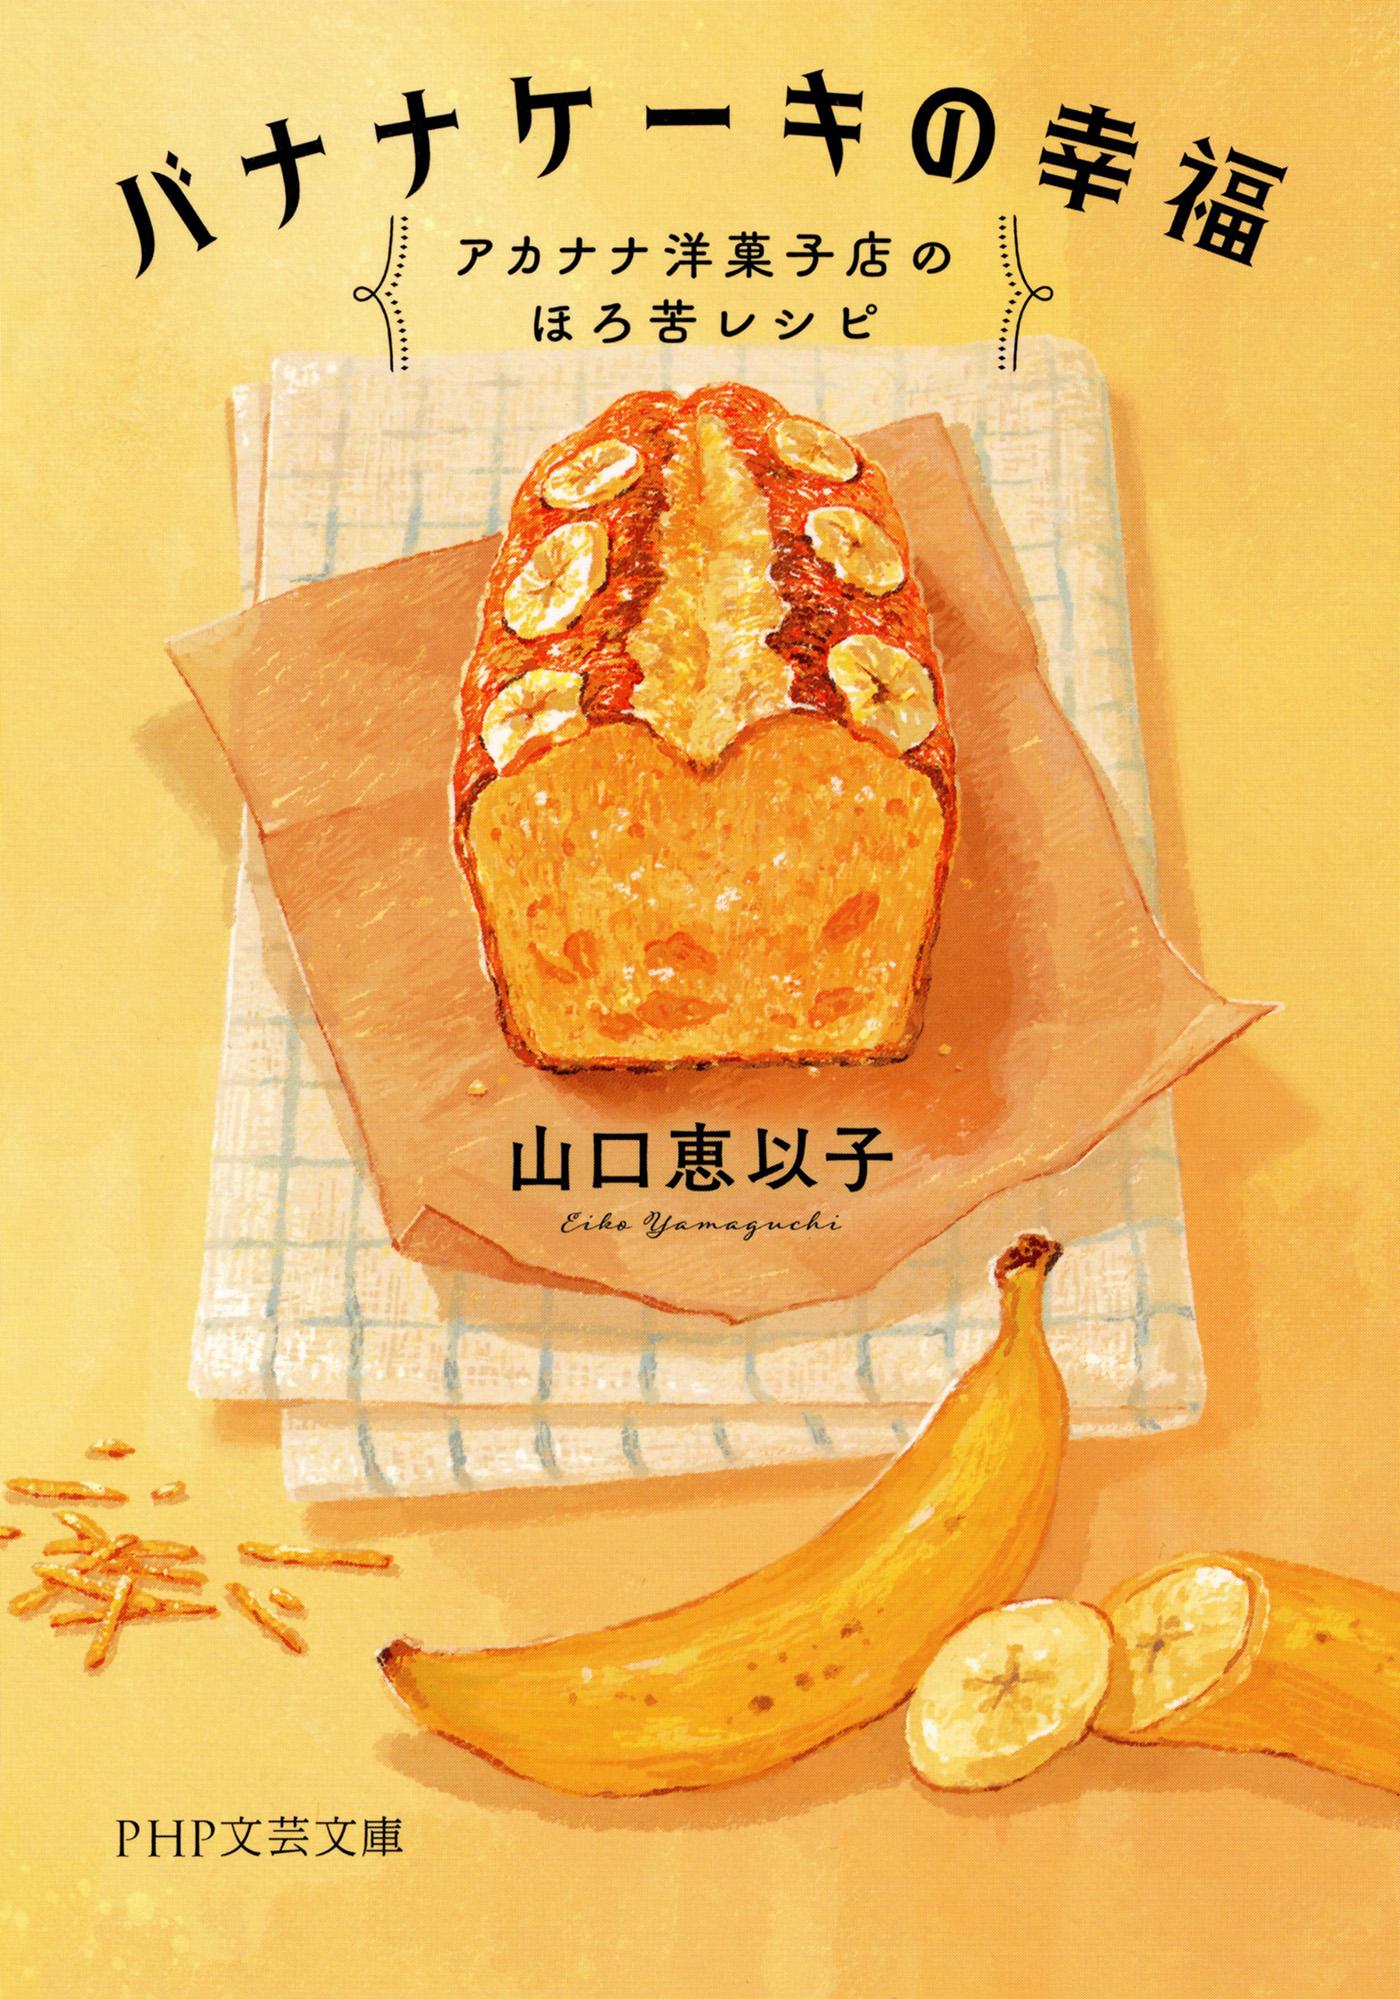 バナナケーキの幸福 アカナナ洋菓子店のほろ苦レシピ